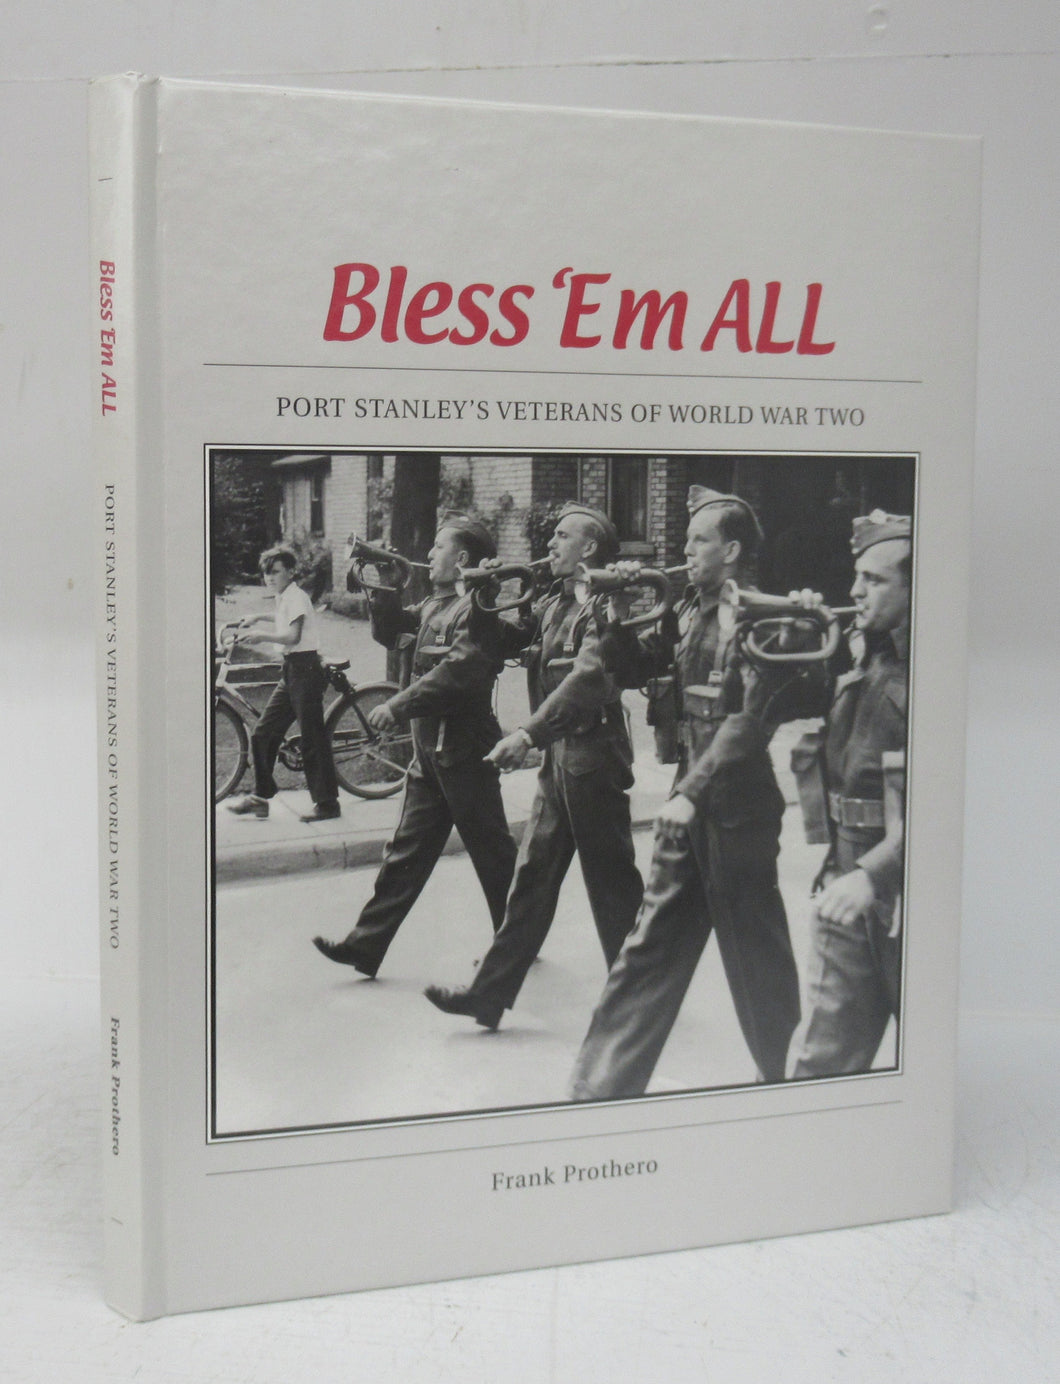 Bless 'Em All: Port Stanley's Veterans of World War Two